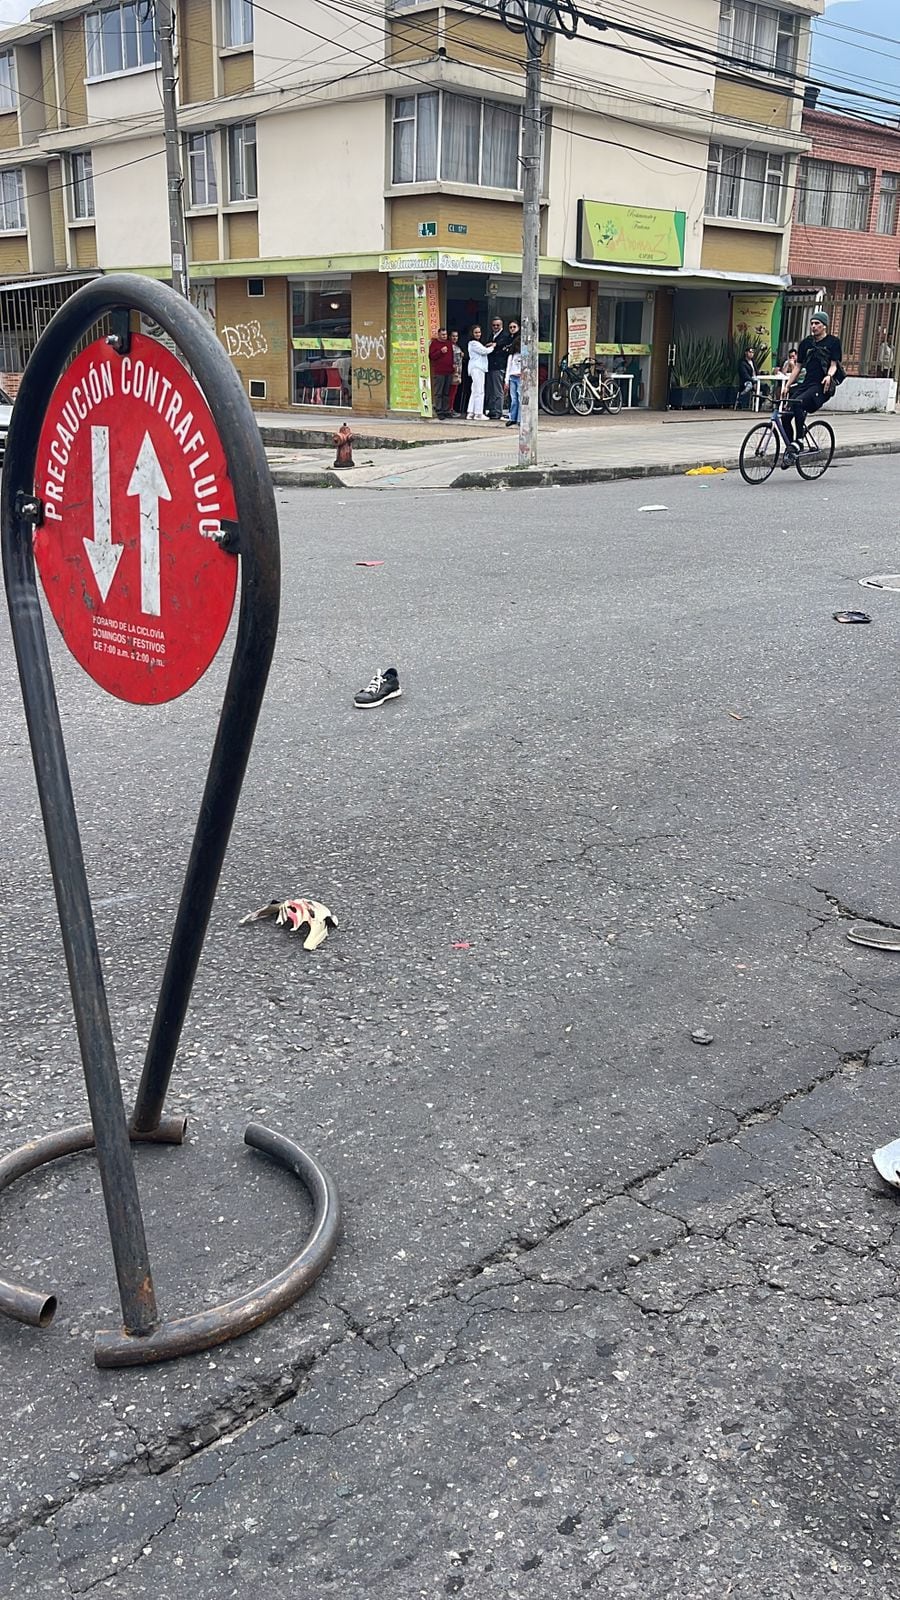 En el piso se ven algunas de las pertenencias de quienes fueron atropellados por un conductor borracho en el sur de Bogotá mientras hacían uso de la ciclovía.